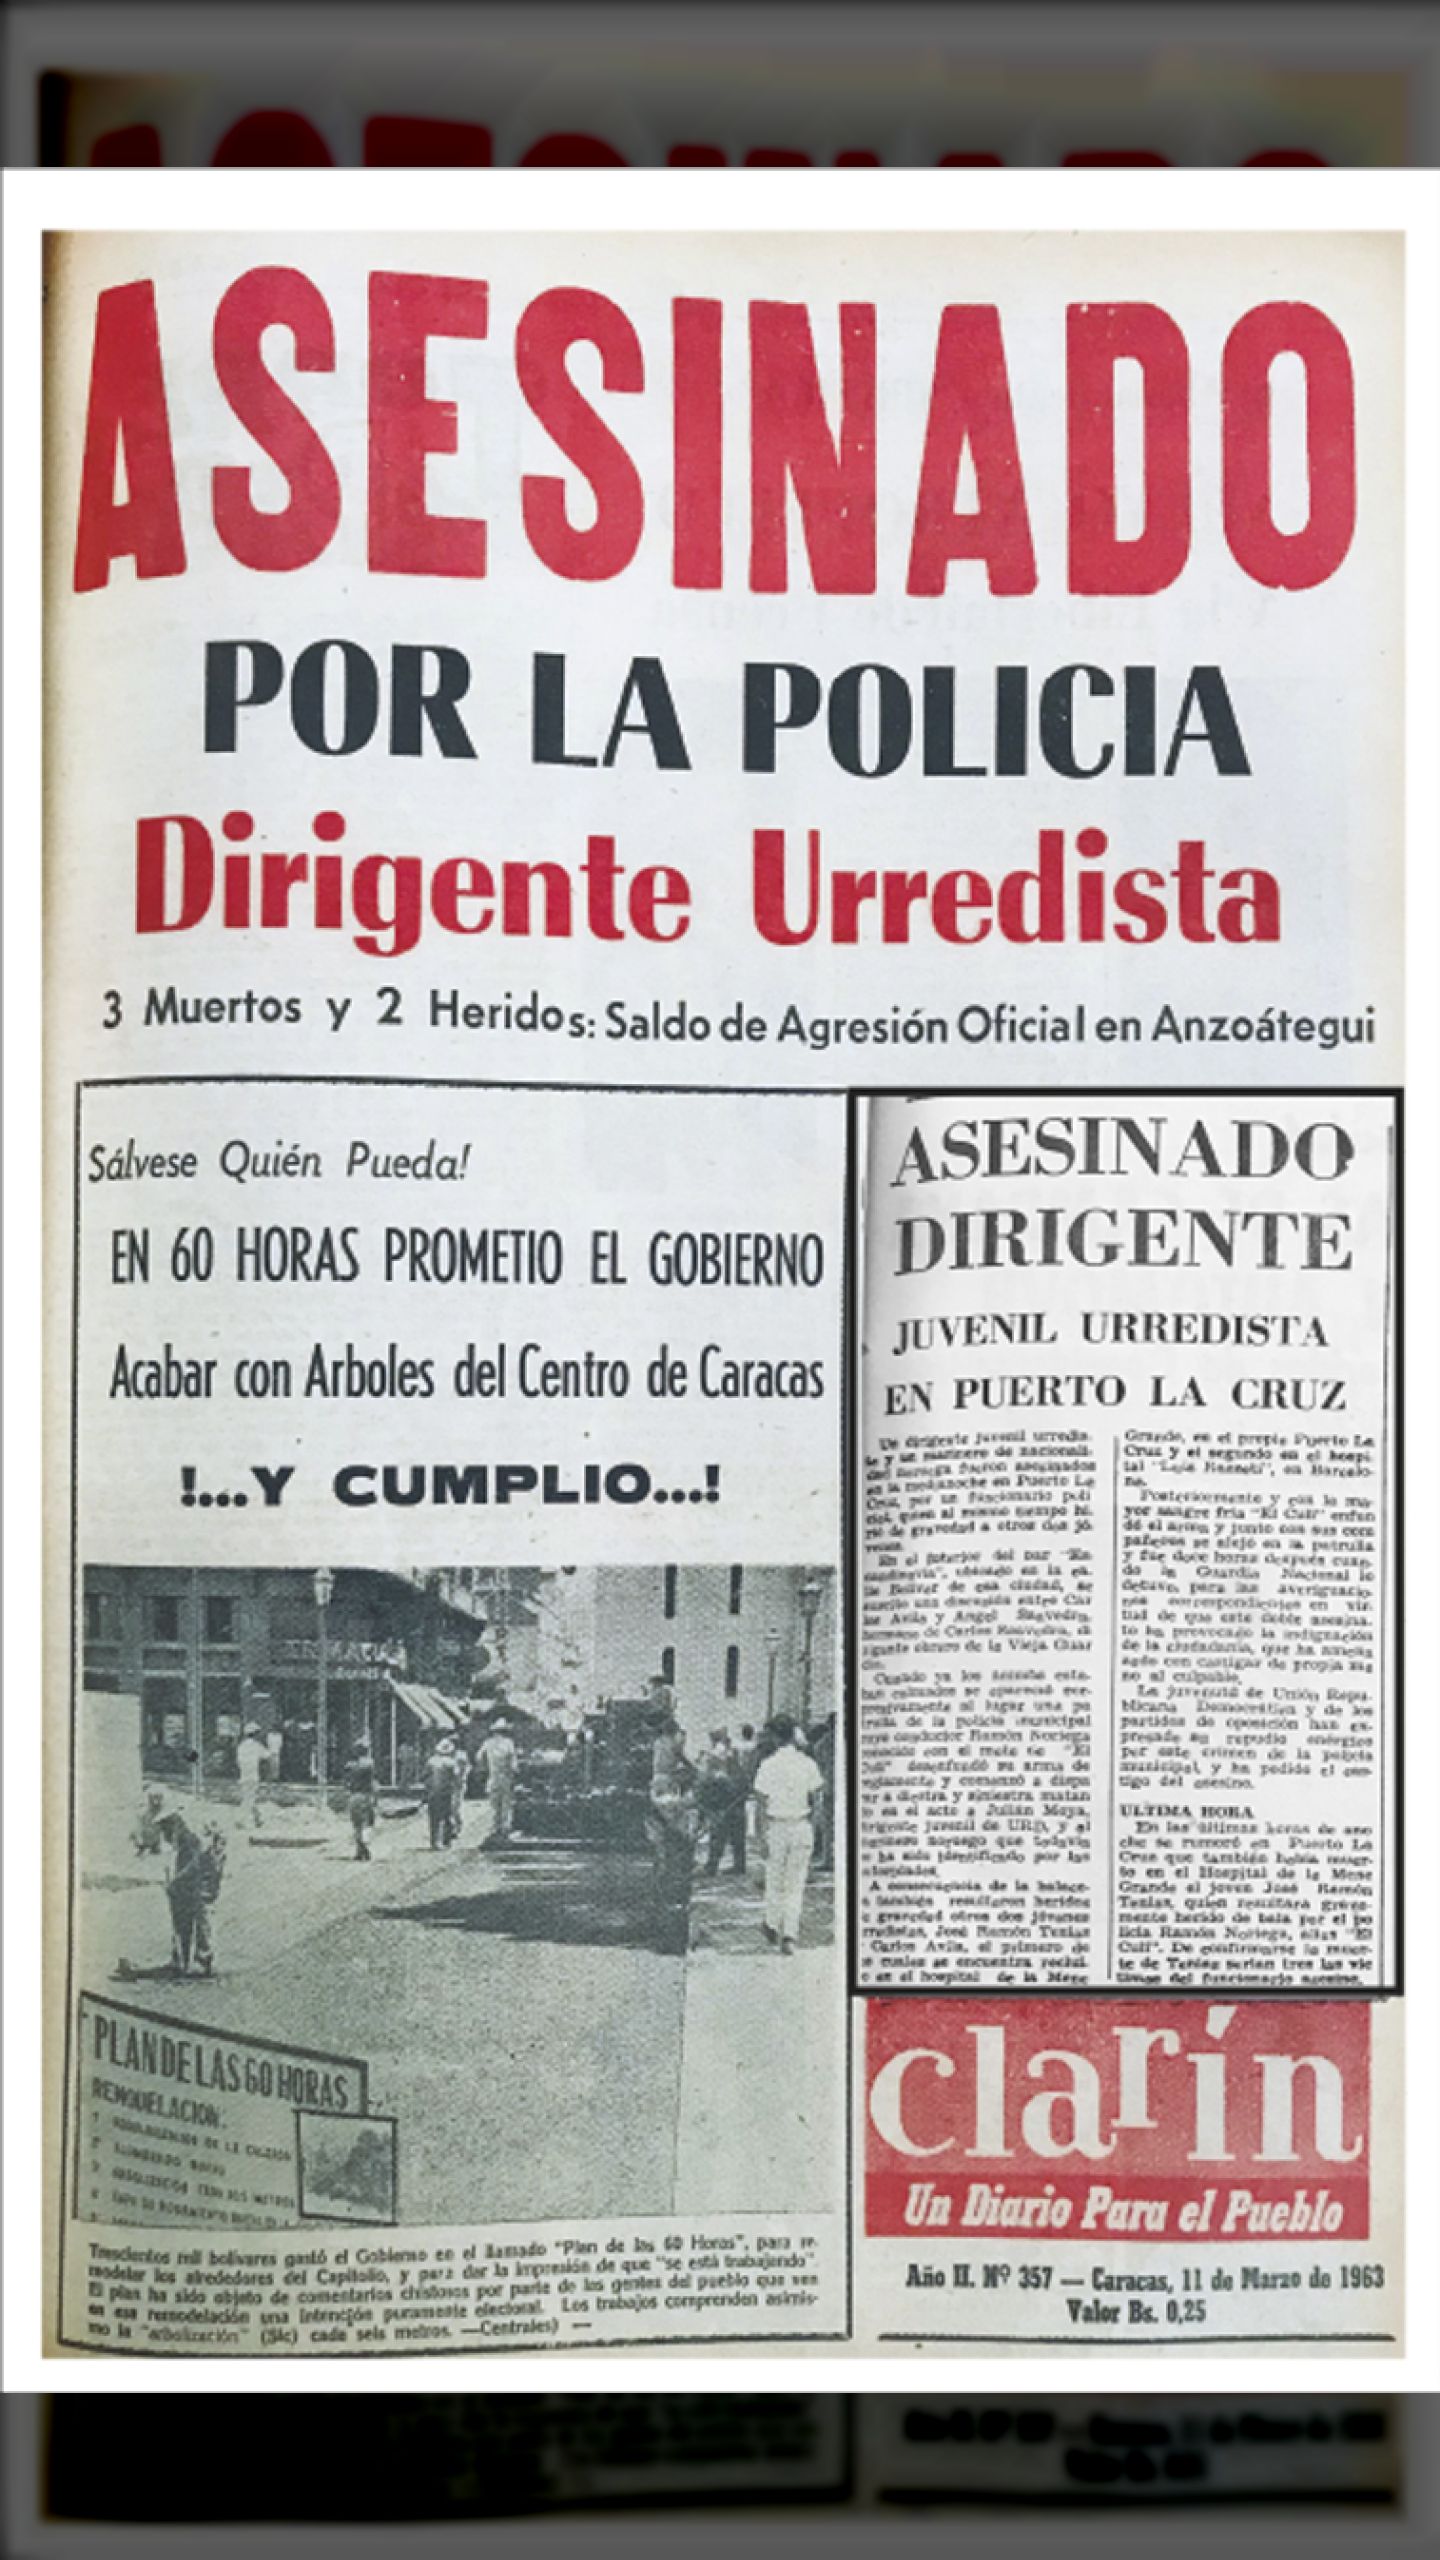 ASESINADO POR LA POLICIA DIRIGENTE URREDISTA (Clarín, 11 de marzo de 1963)